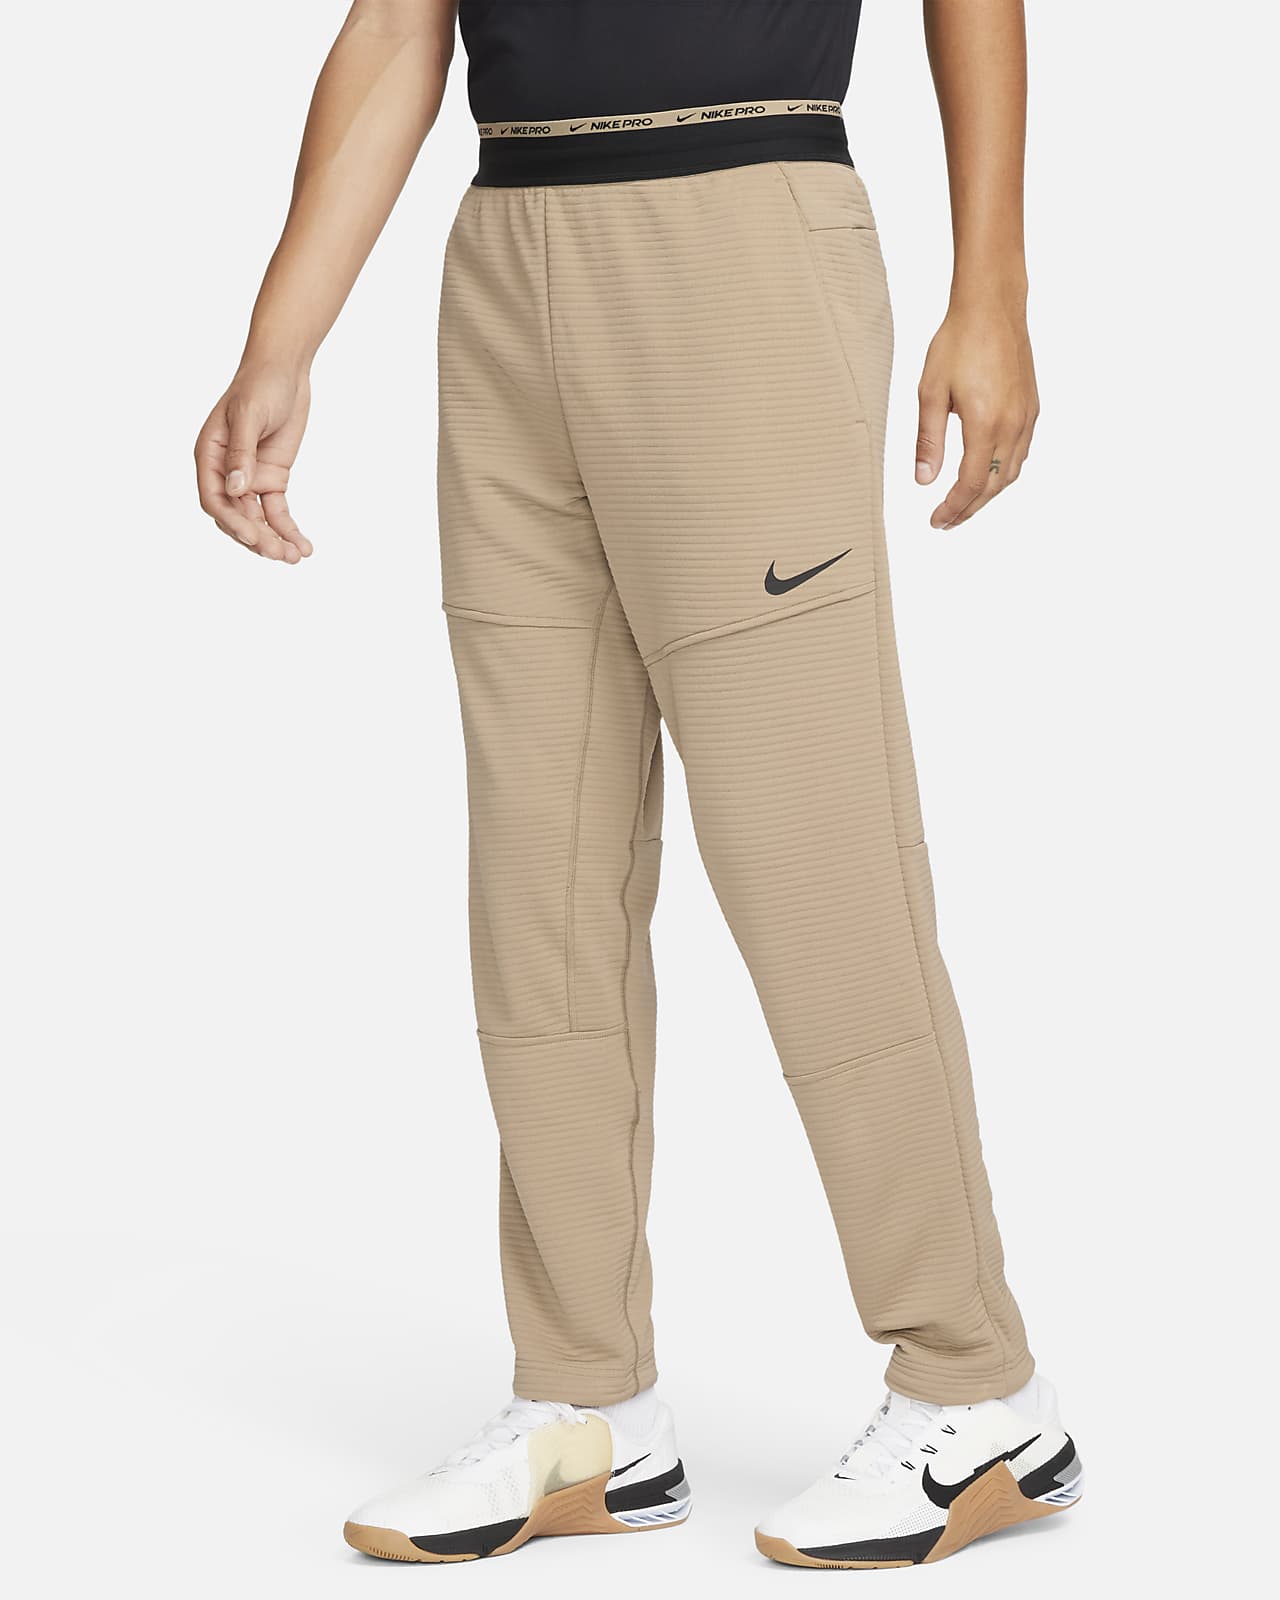 Nike Men's Dri-FIT Fleece Fitness Trousers. UK